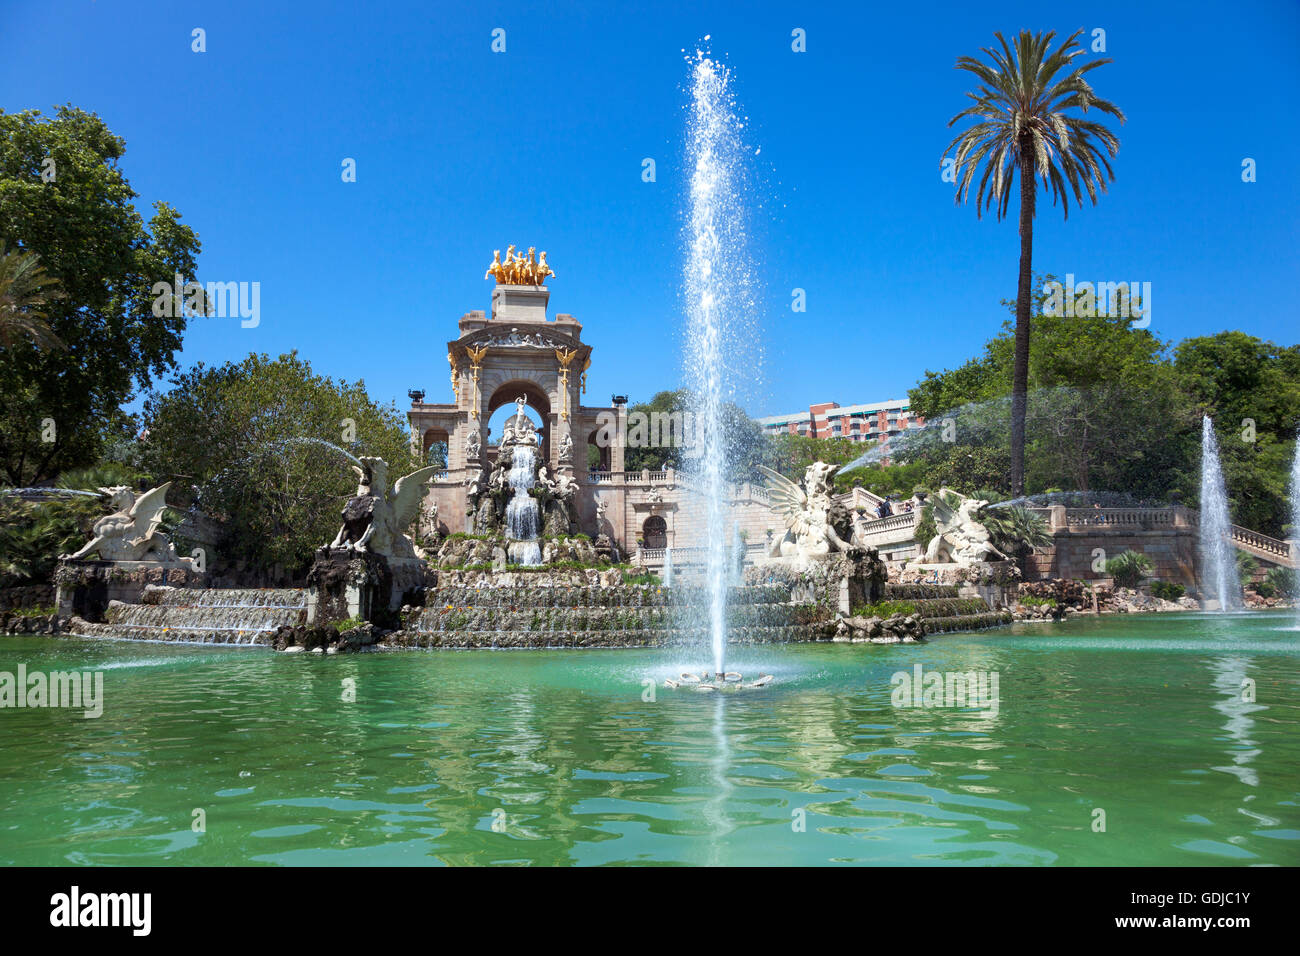 Cascada fontana monumentale parte disegnate da Gaudi nel Parco de la Ciutadella, Barcellona, Spagna Foto Stock